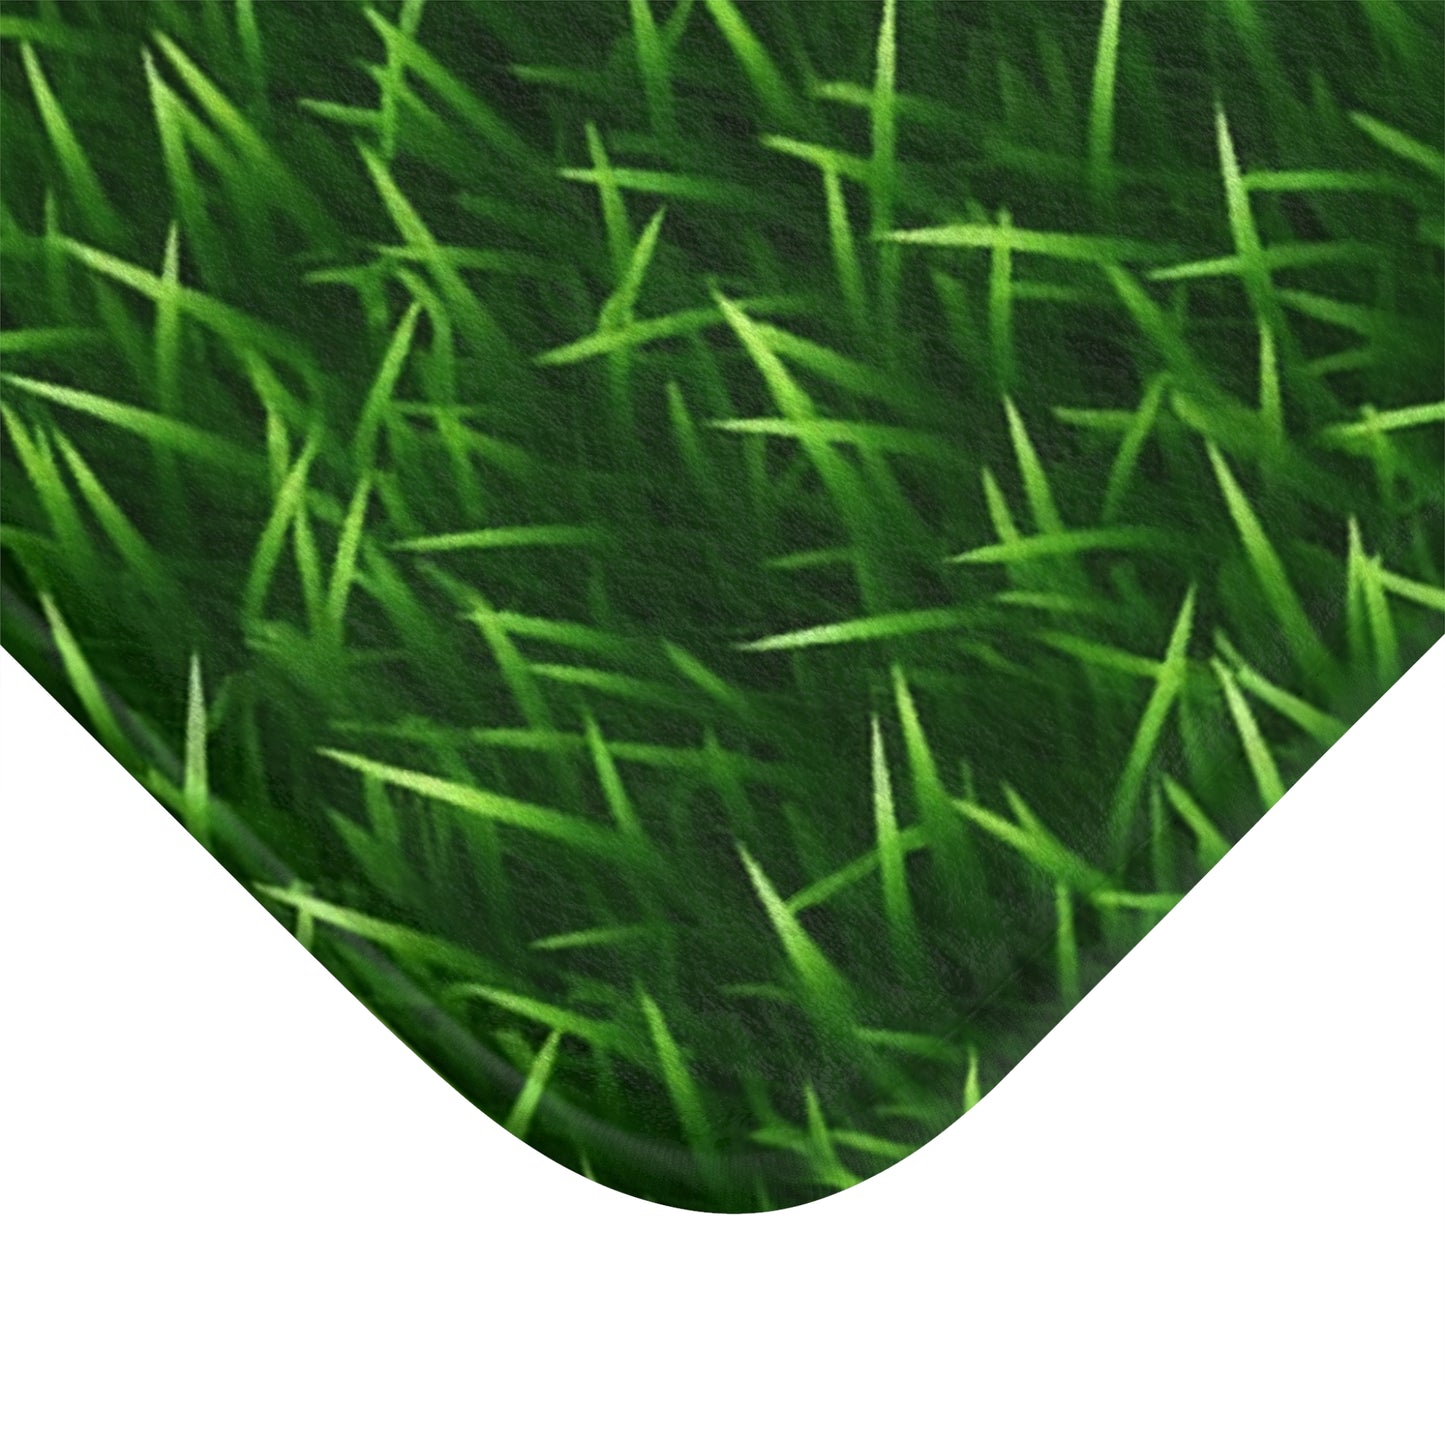 Touch Grass Indoor Style Outdoor Green Artificial Grass Turf - Bath Mat